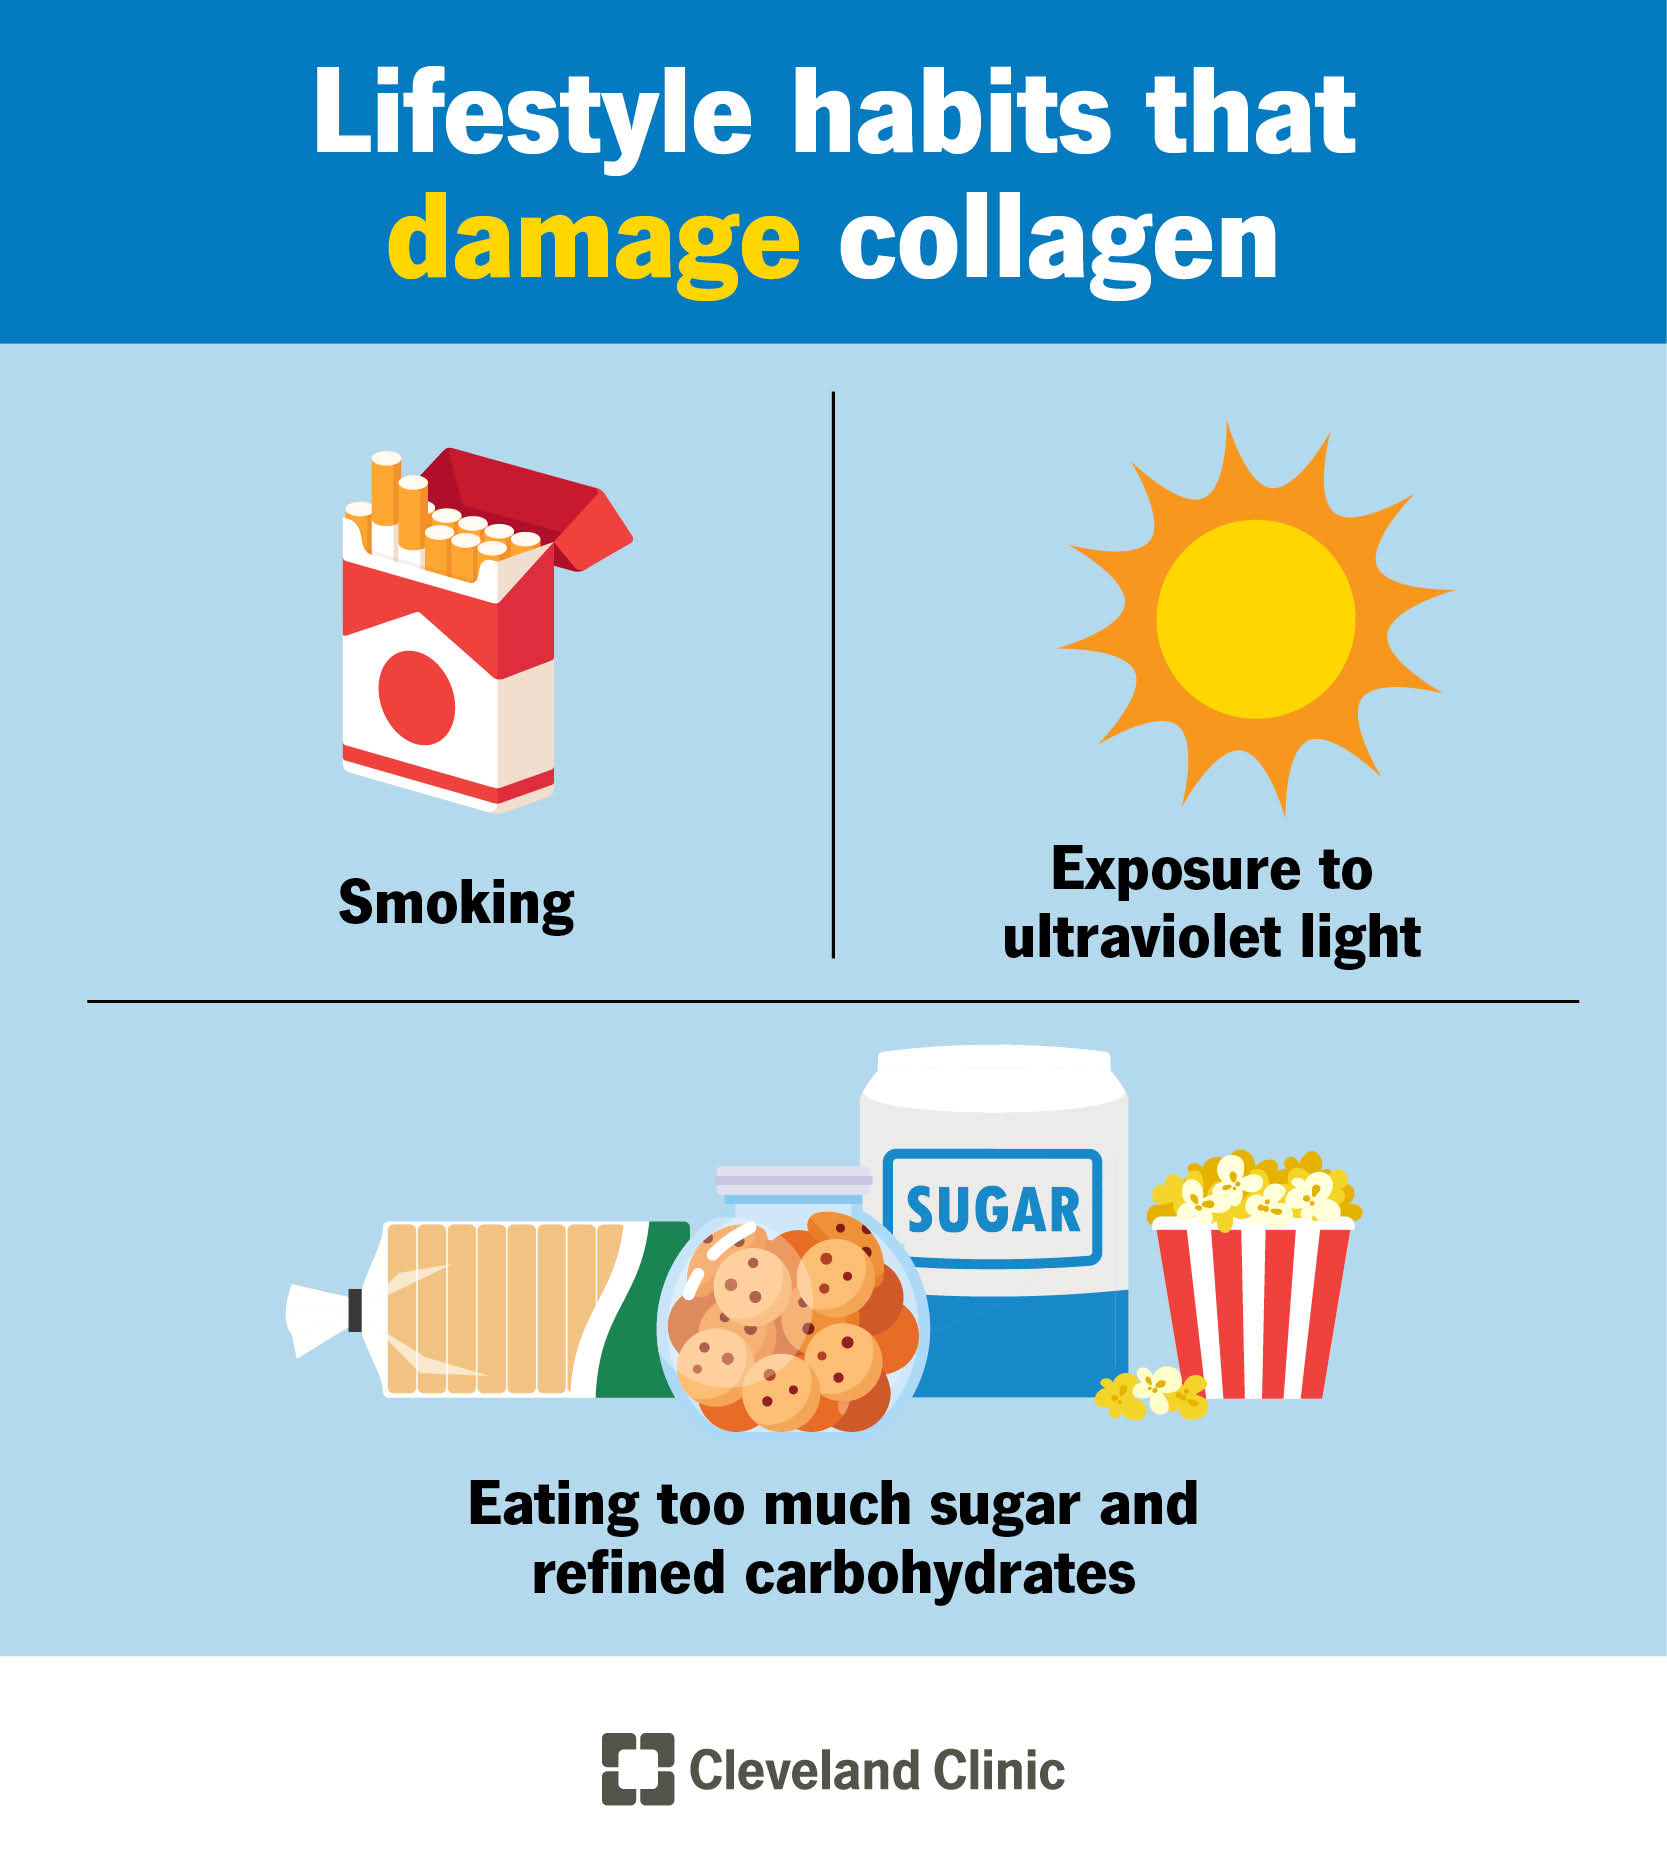 损害胶原蛋白的习惯包括吸烟、过度暴露在紫外线下、吃糖和碳水化合物。